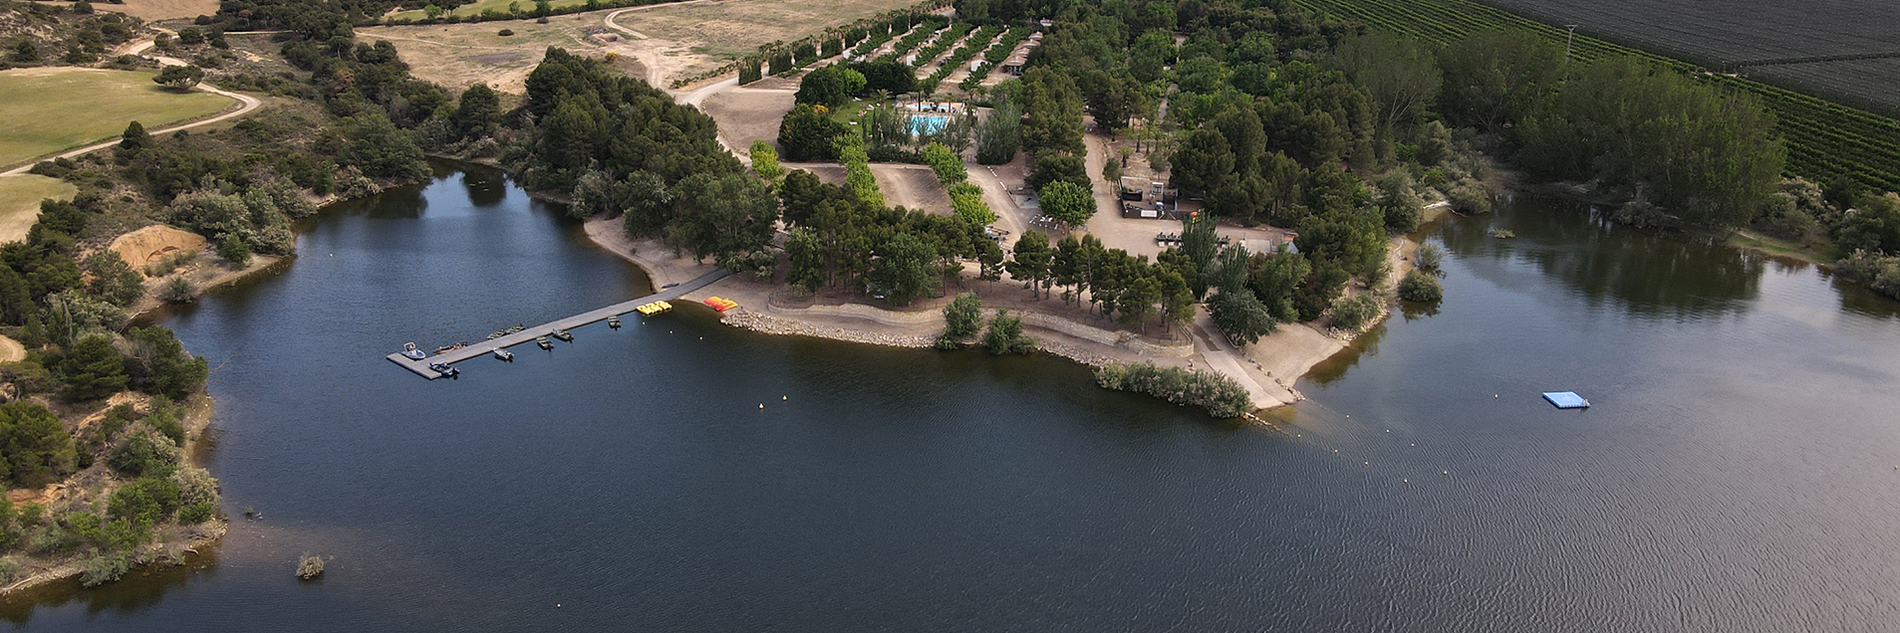 une vue aérienne d' un lac avec une petite île au milieu